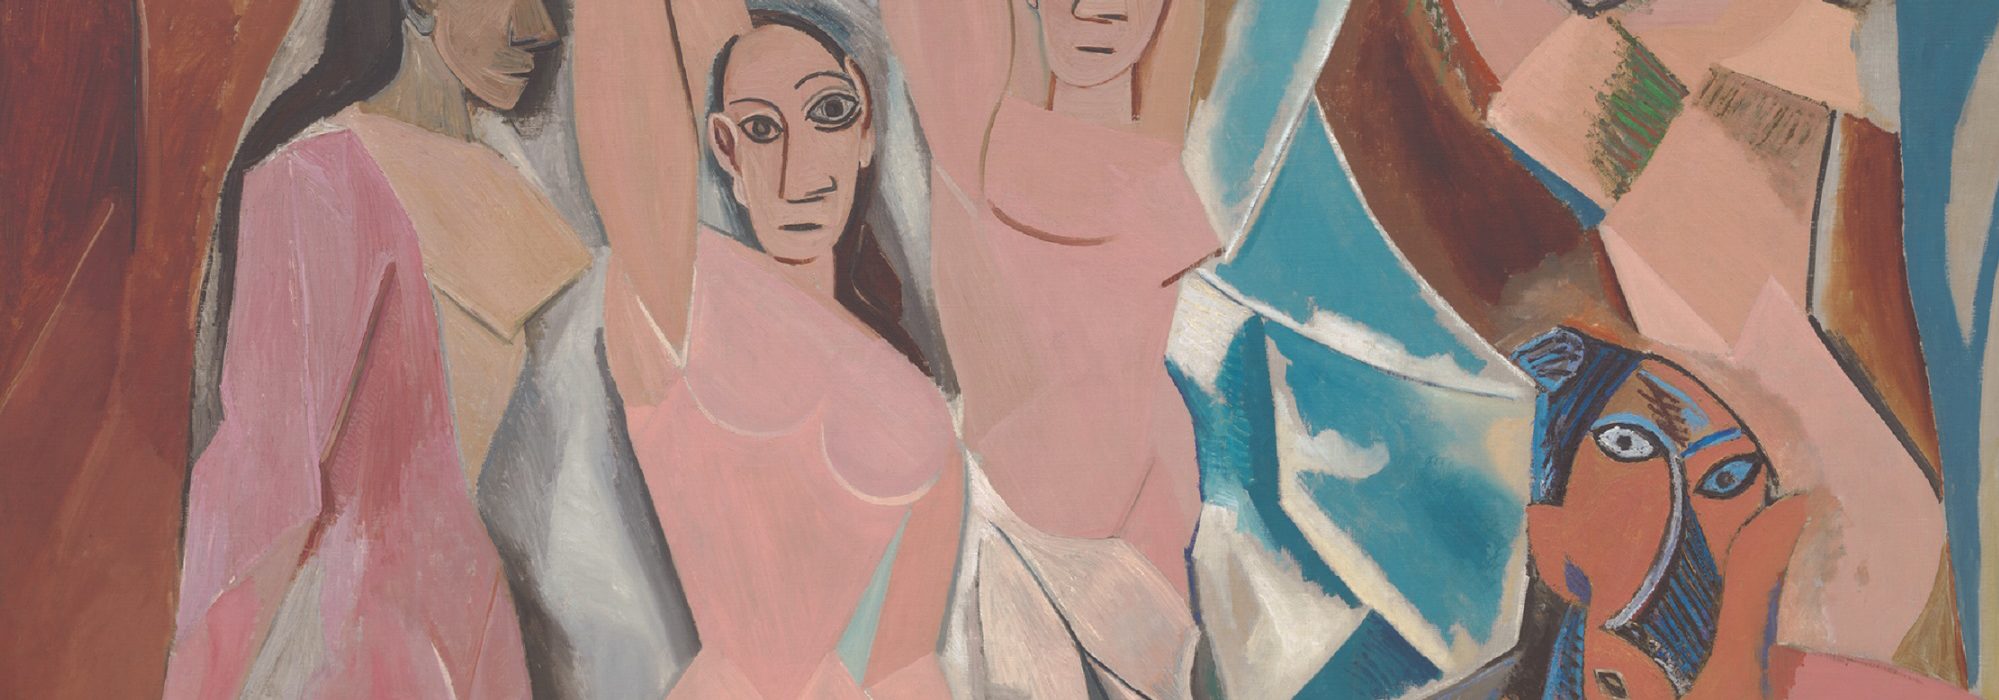 Les Demoiselles d´Avingnon (Pablo Picasso) - MoMa